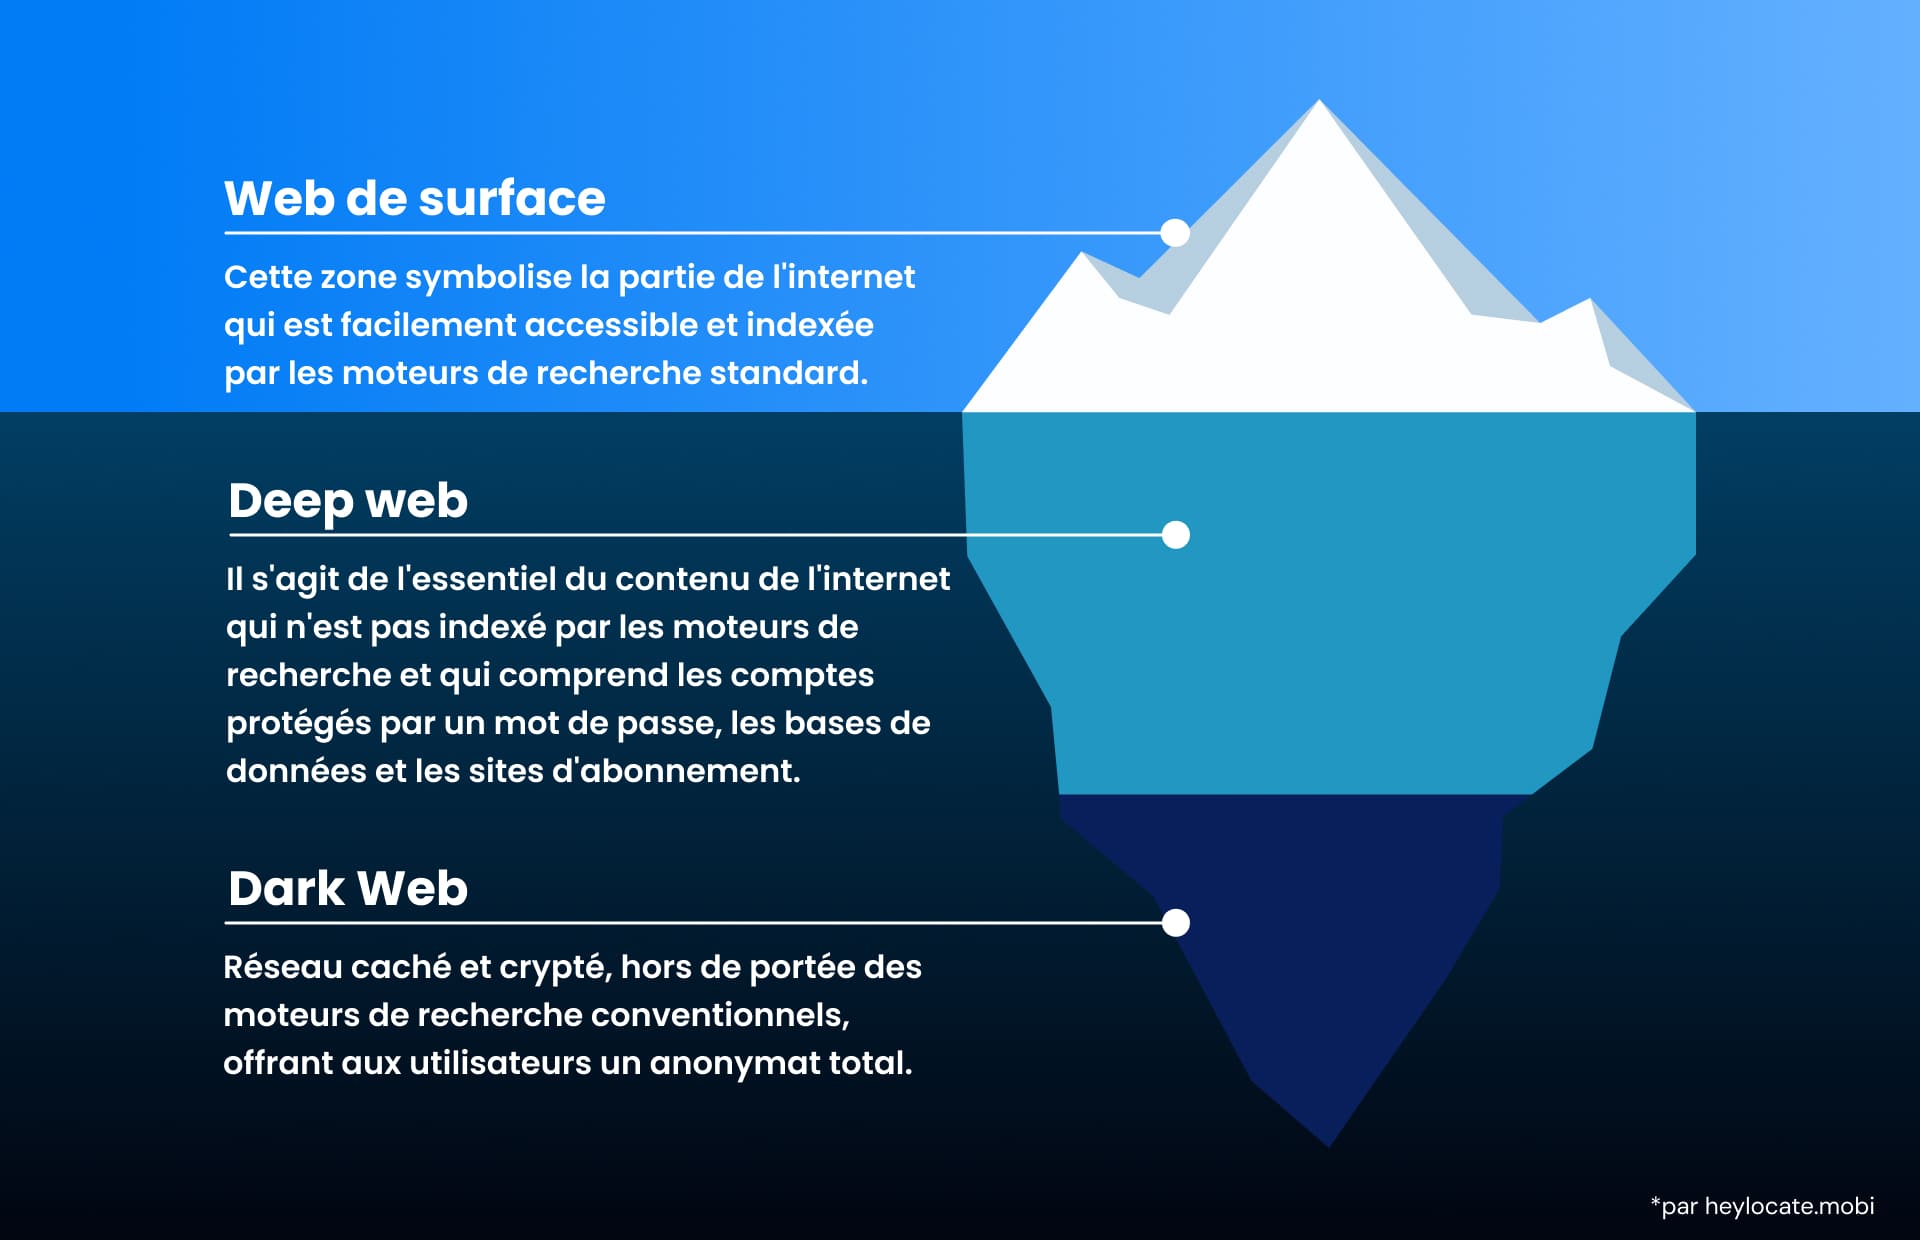 Image d'un iceberg représentant les trois parties du web : le web public de surface, le web profond et le web obscur anonyme